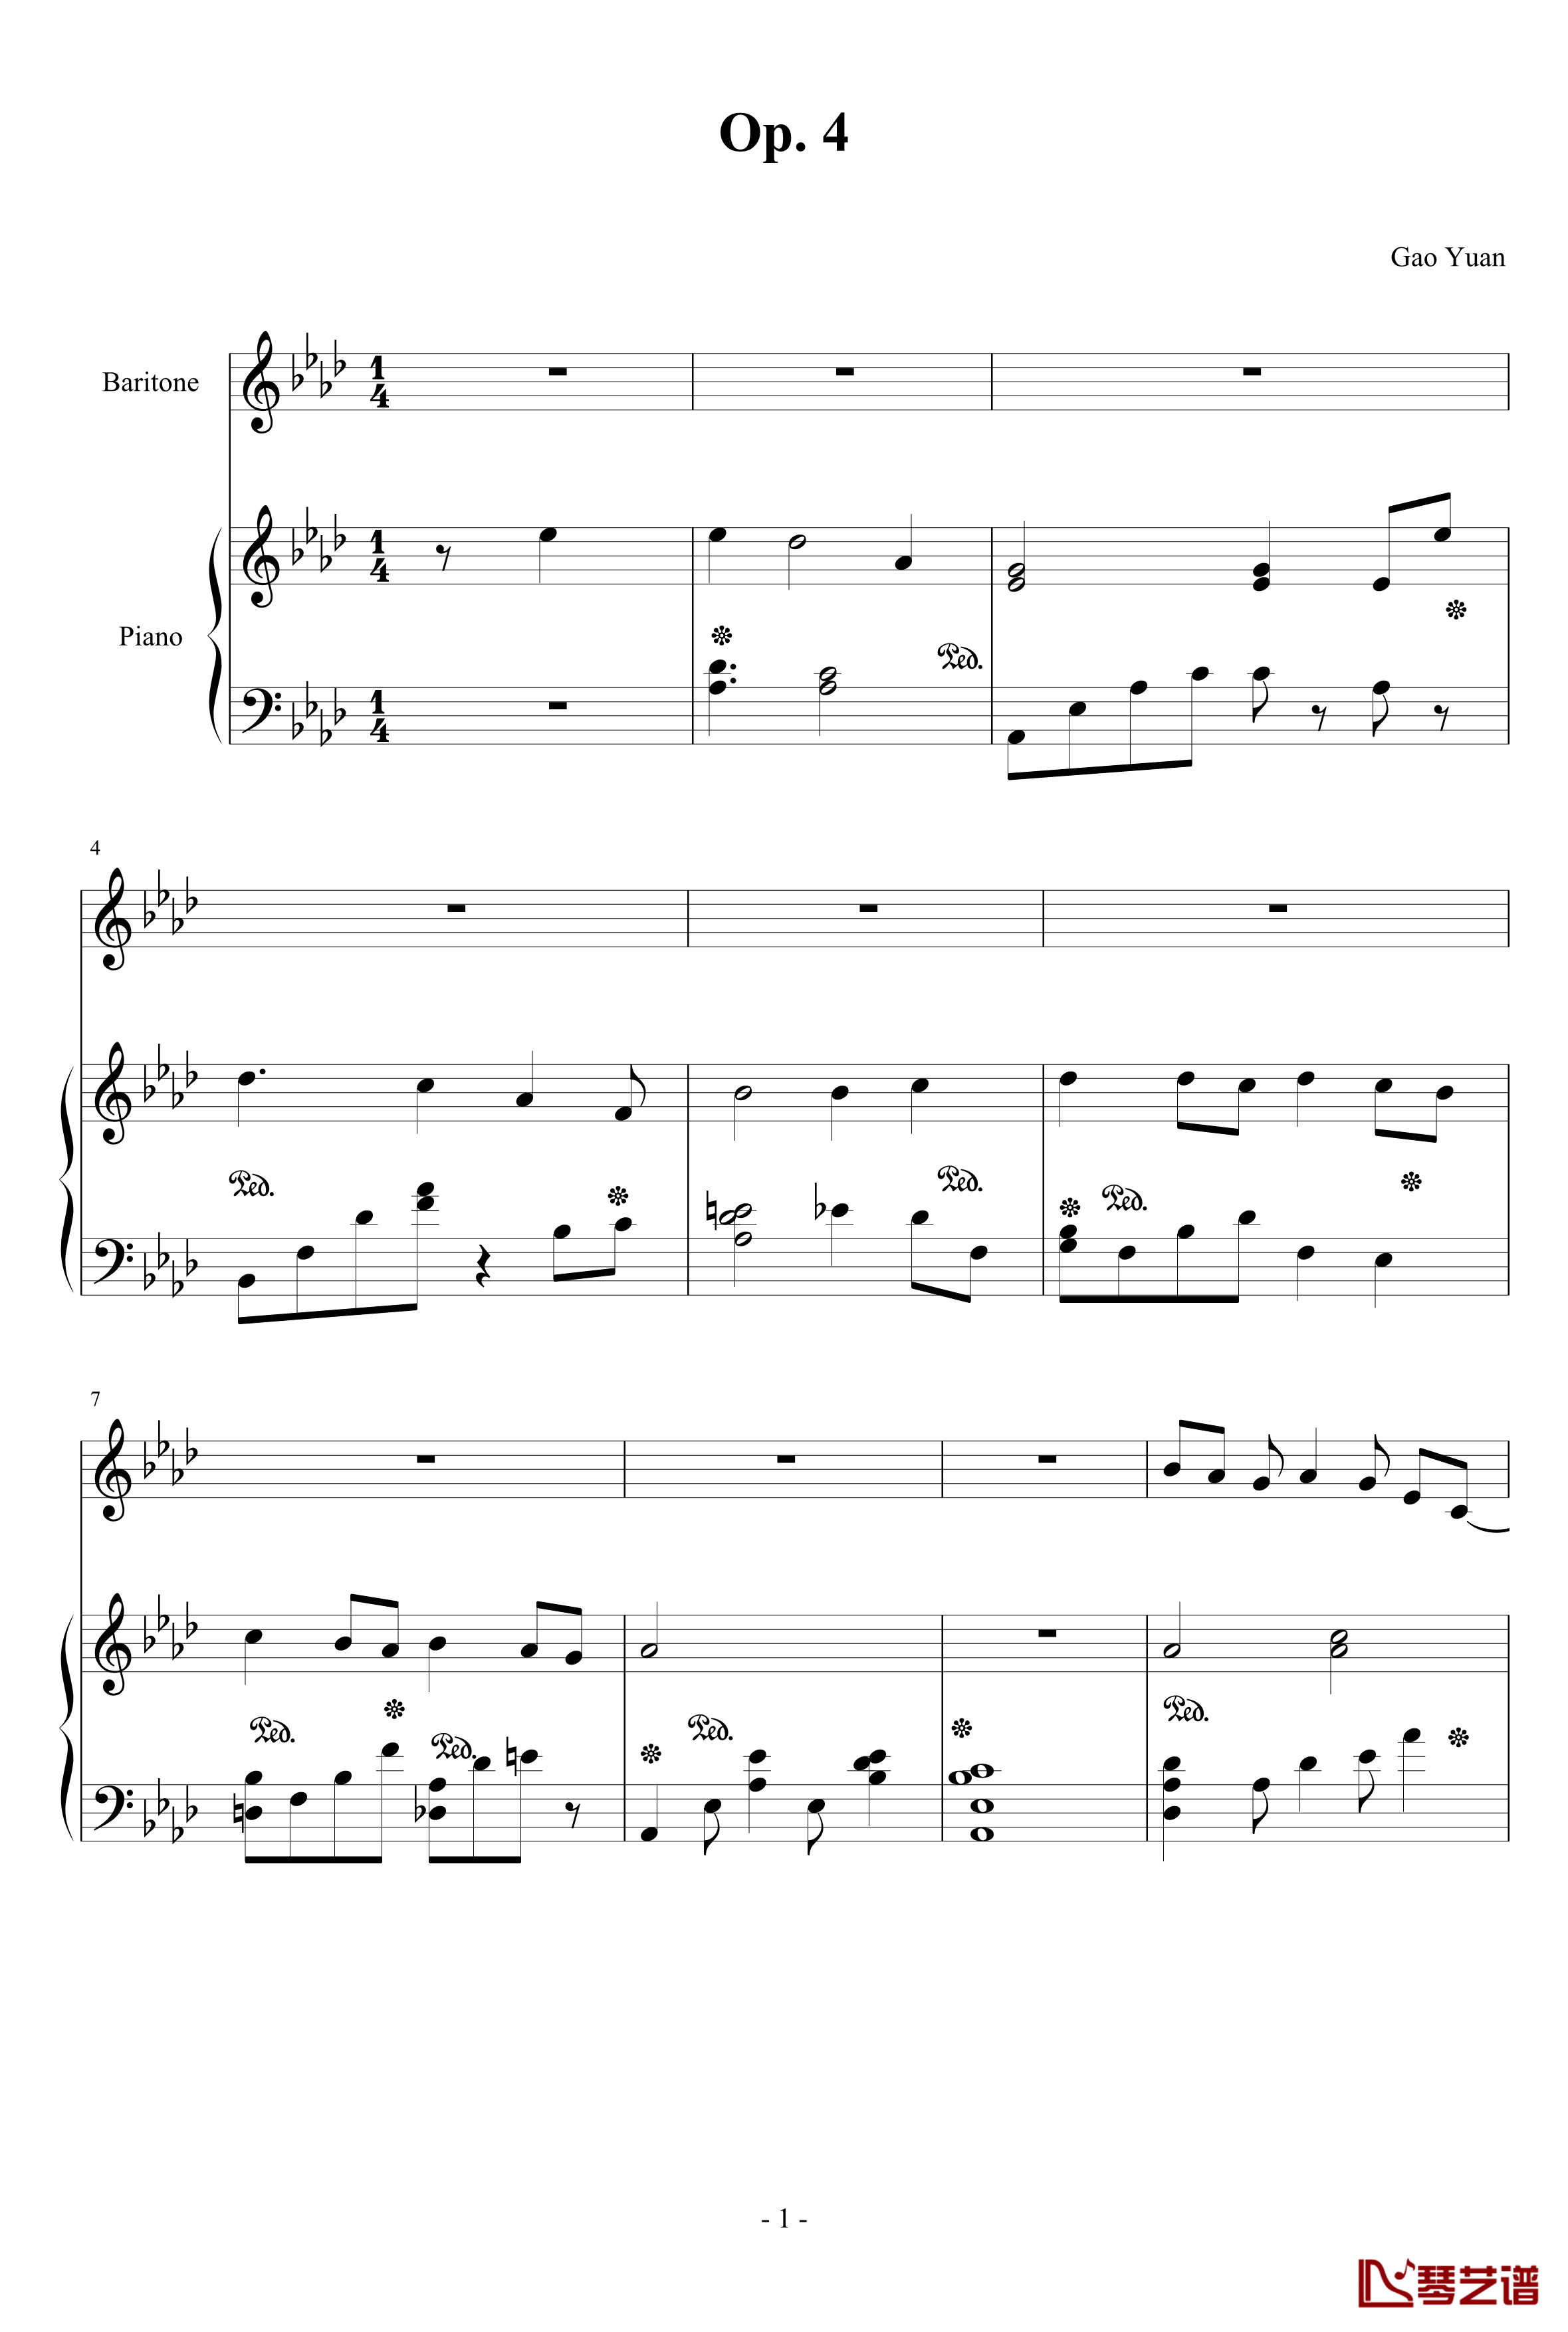 月入天心钢琴谱-Op. 4-夏日梦舞1